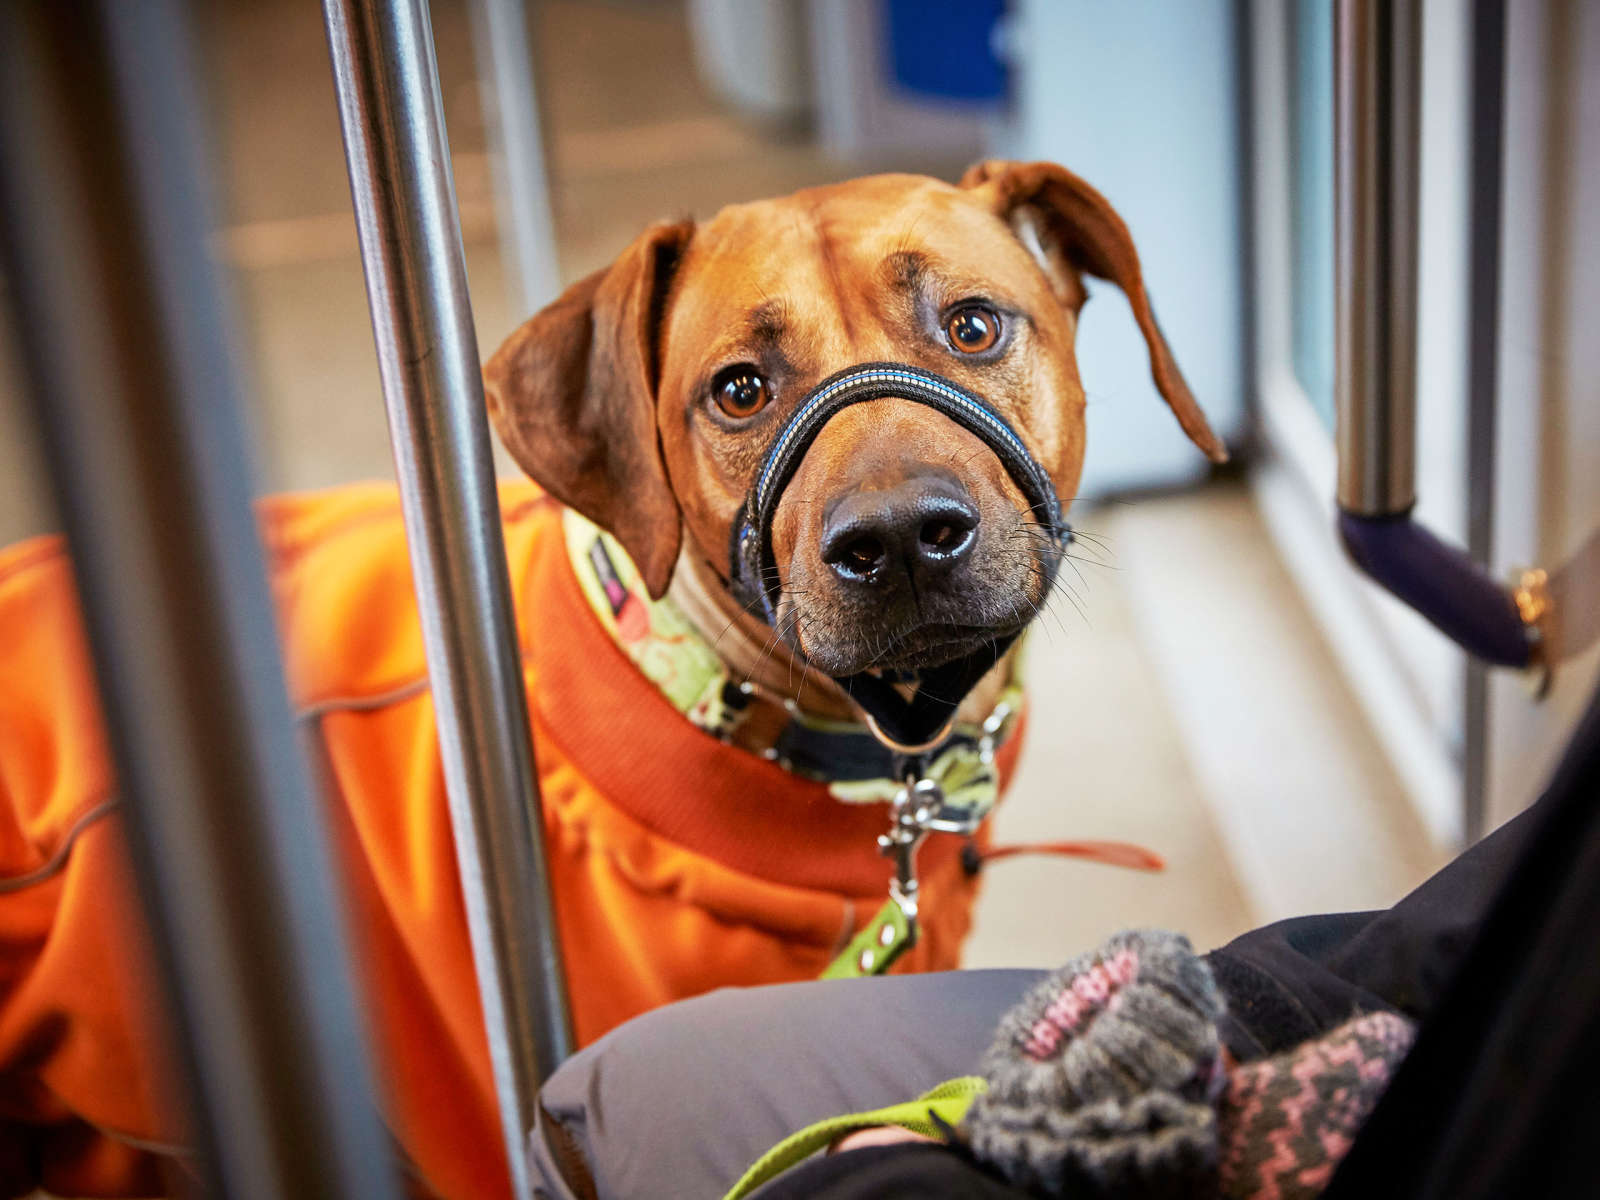 Armas-koira matkustaa raitiovaunulla